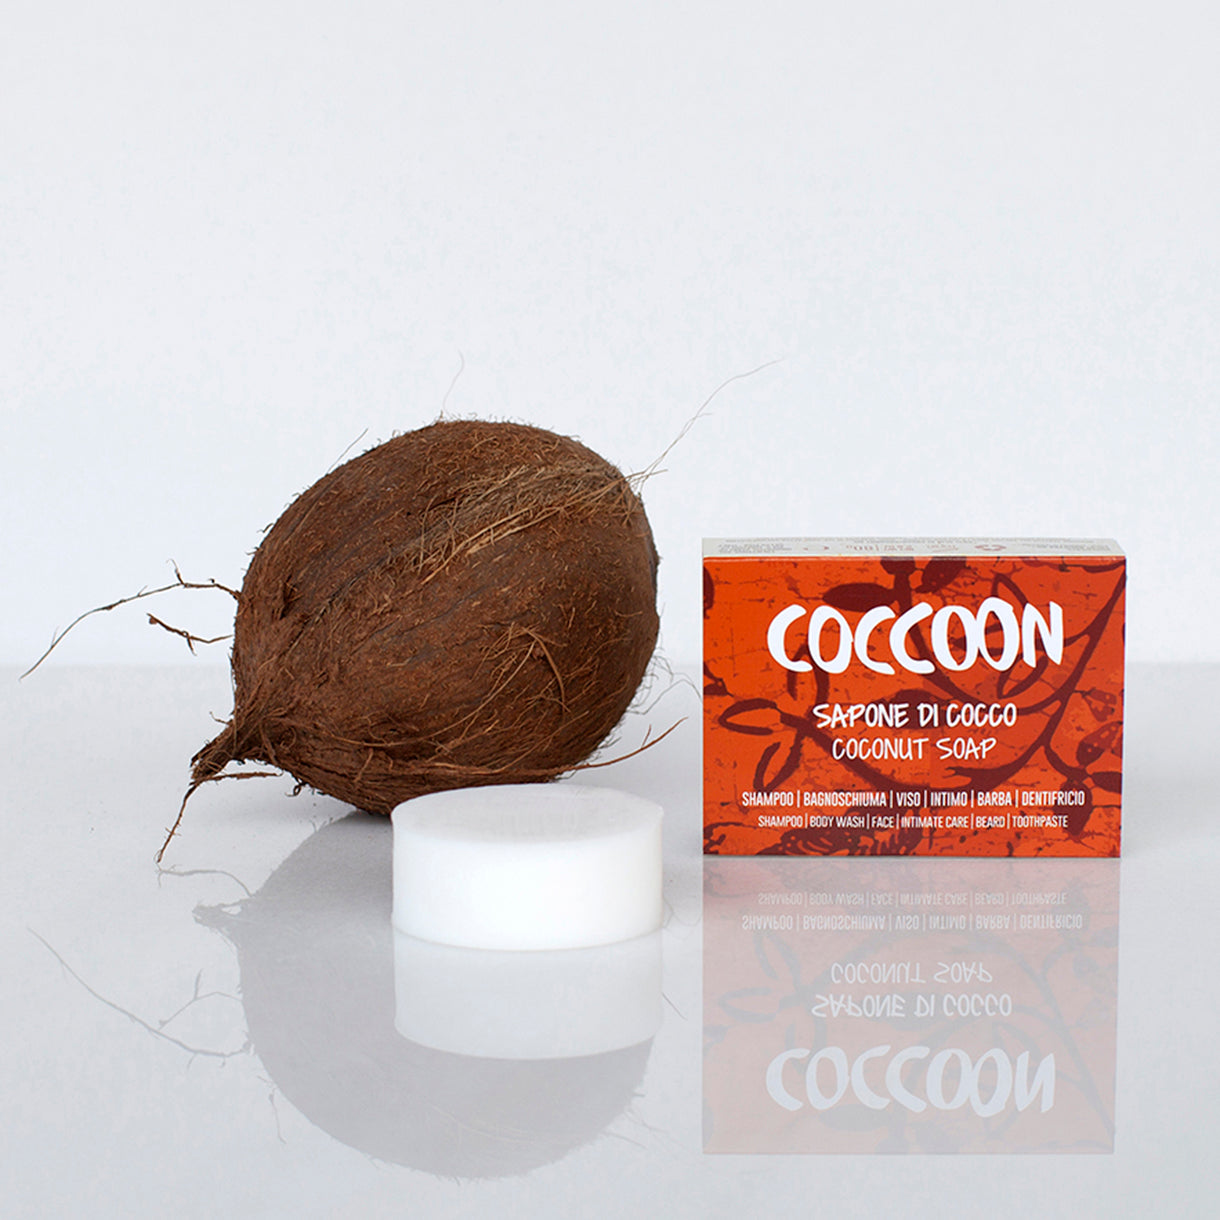 Confezione chiusa di sapone solido Coccoon, panetto nudo di sapone solido Coccoon e noce di cocco